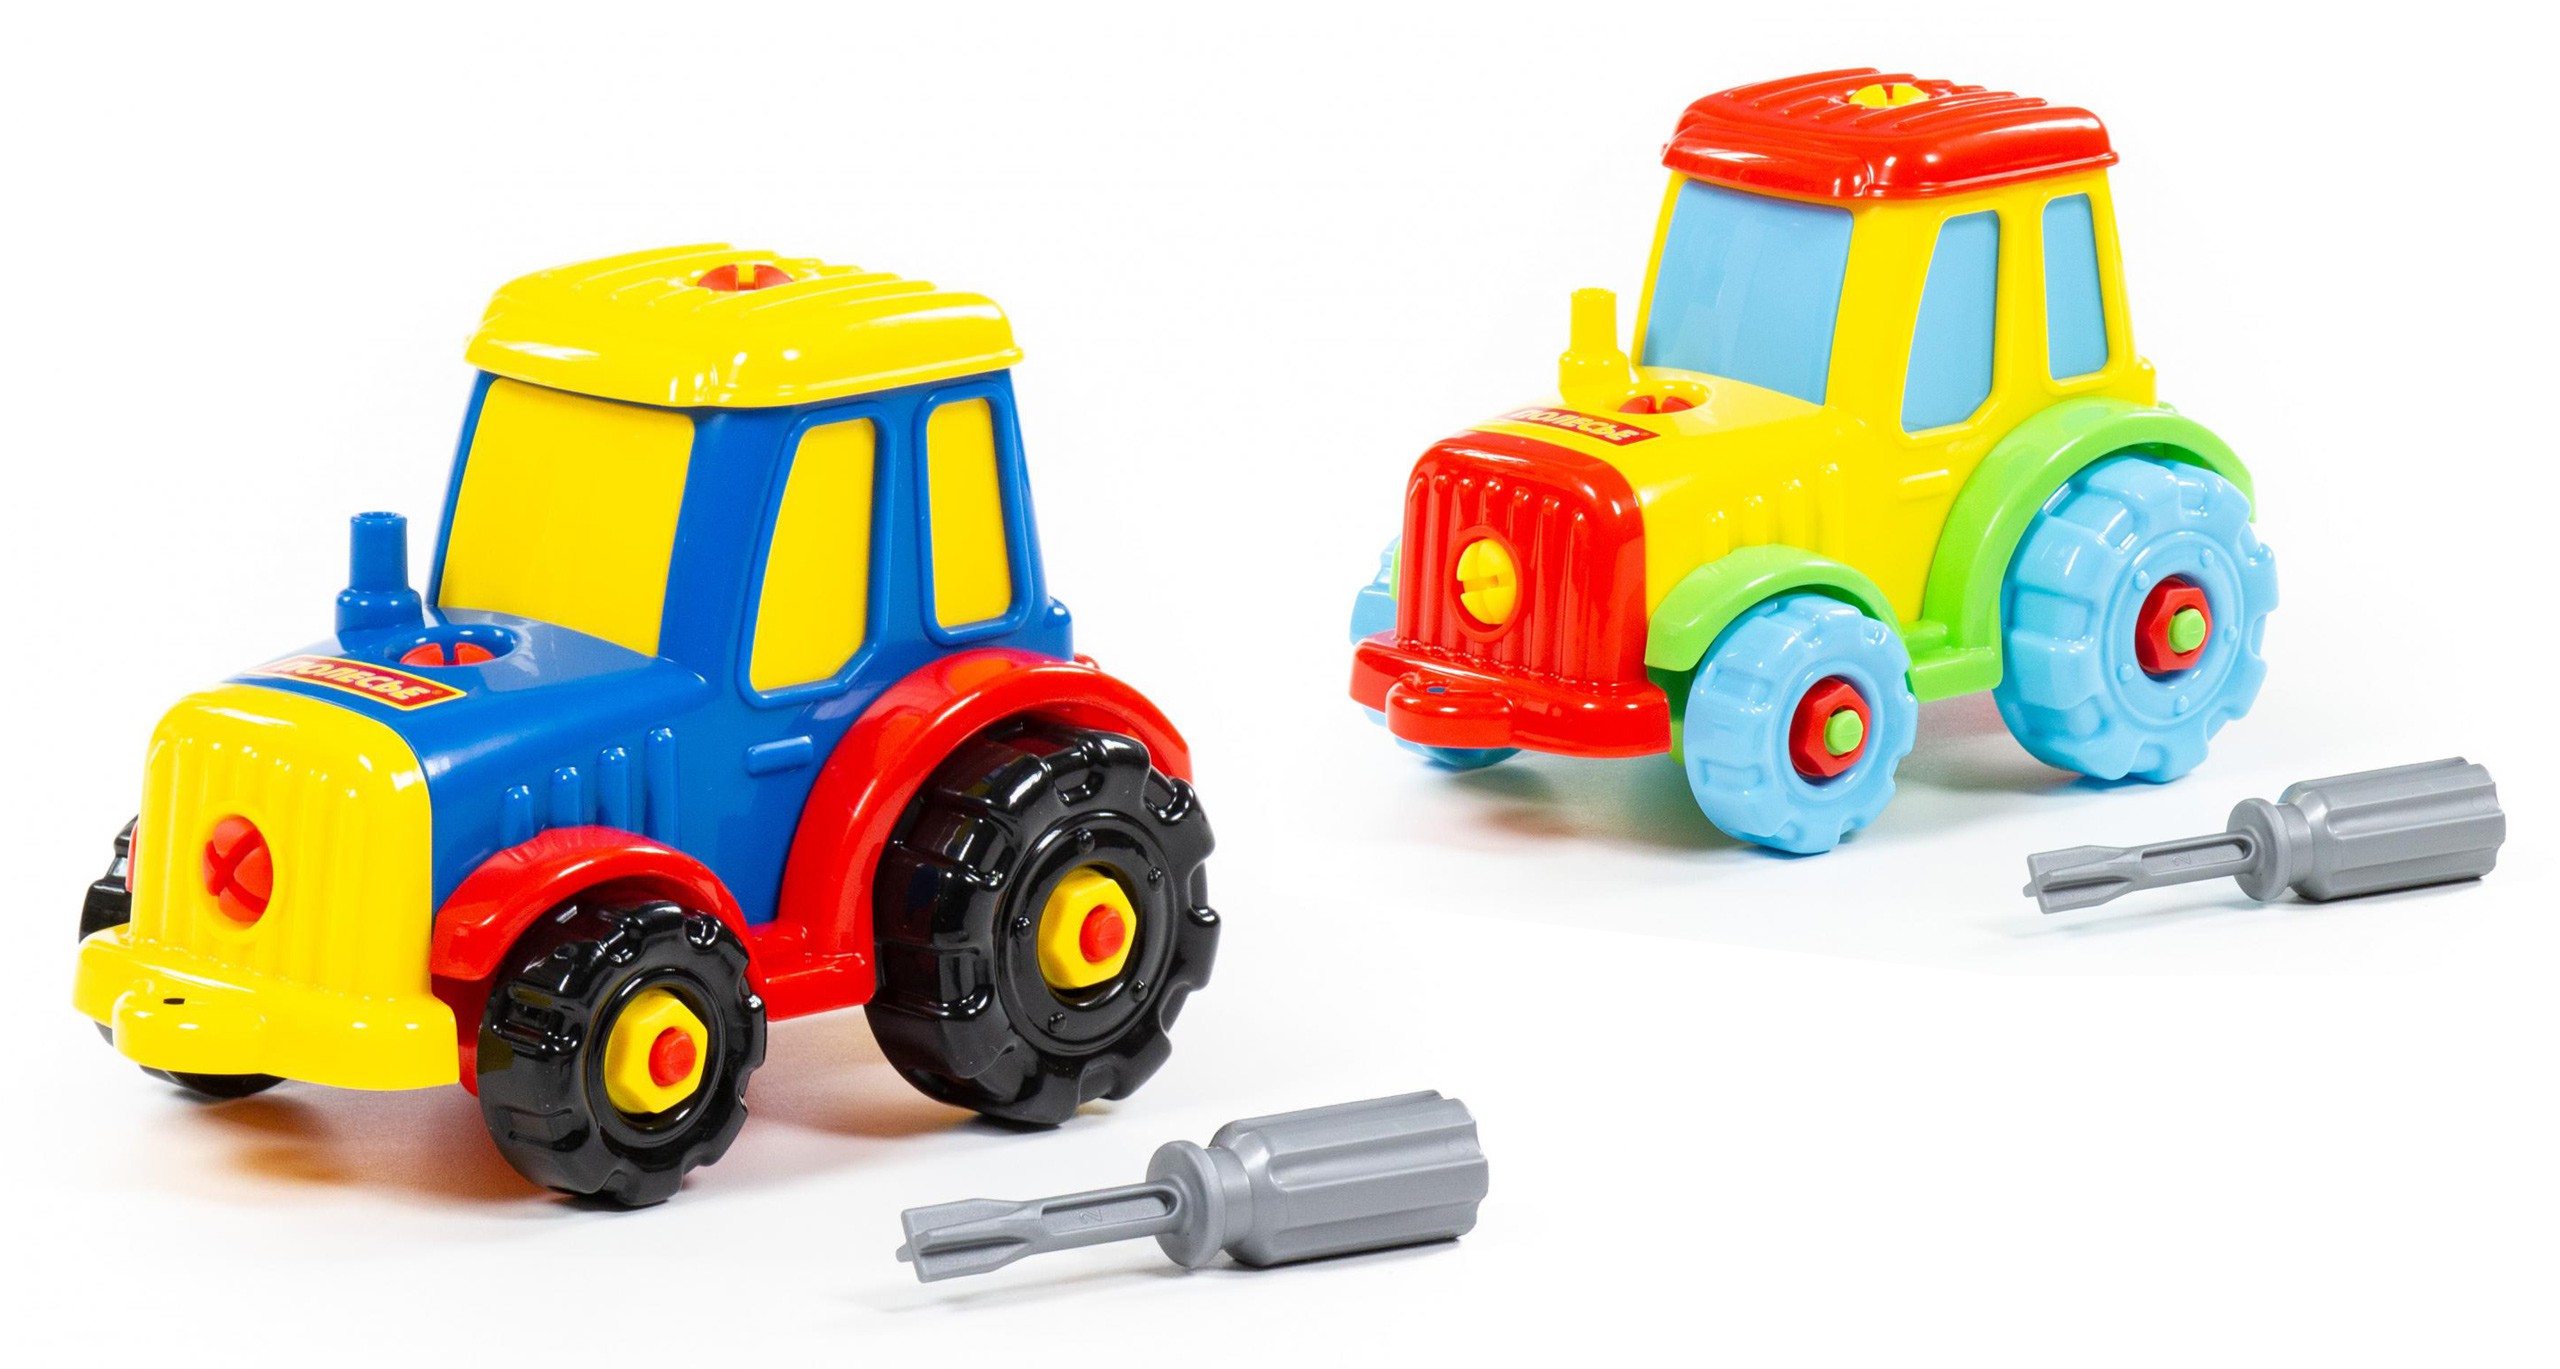 Kolorowy traktor ze śrubokretem Wader > Sklep